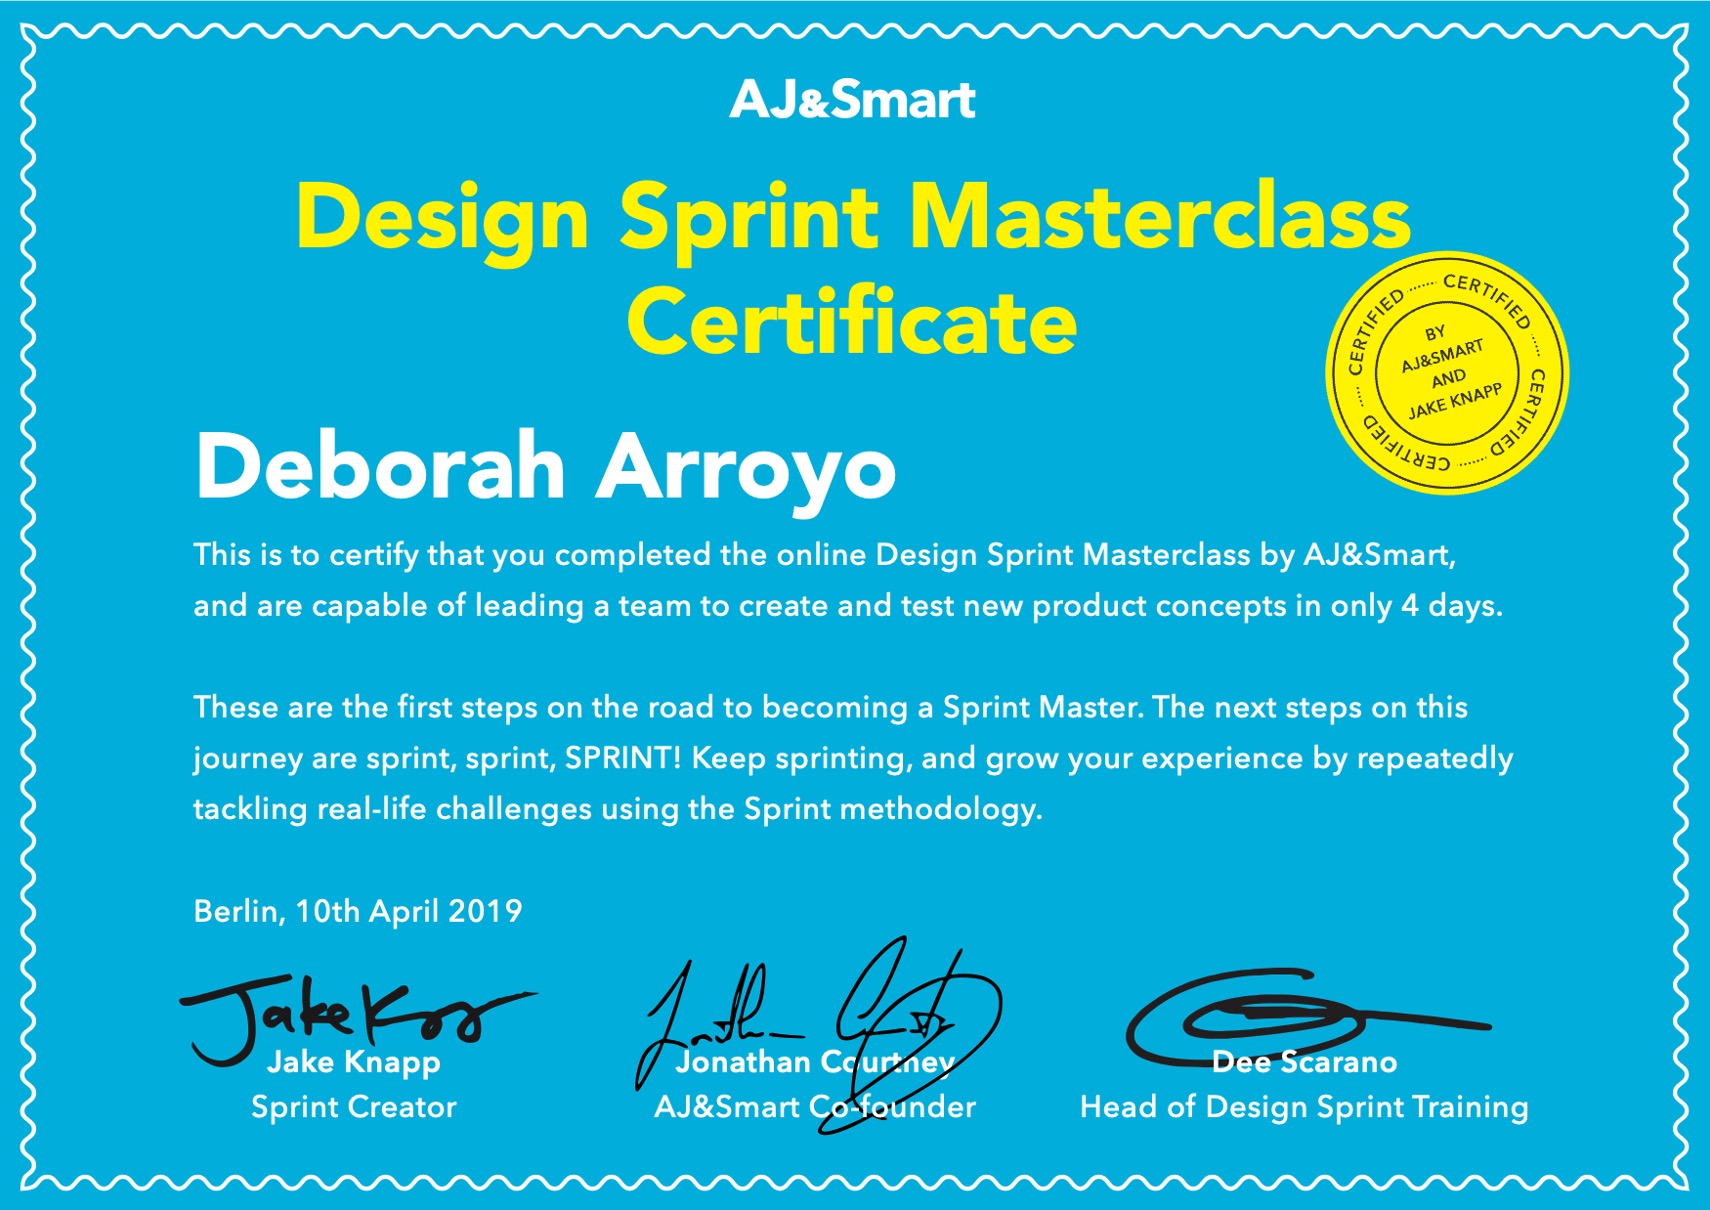 A/J Smart Design Sprint Certified